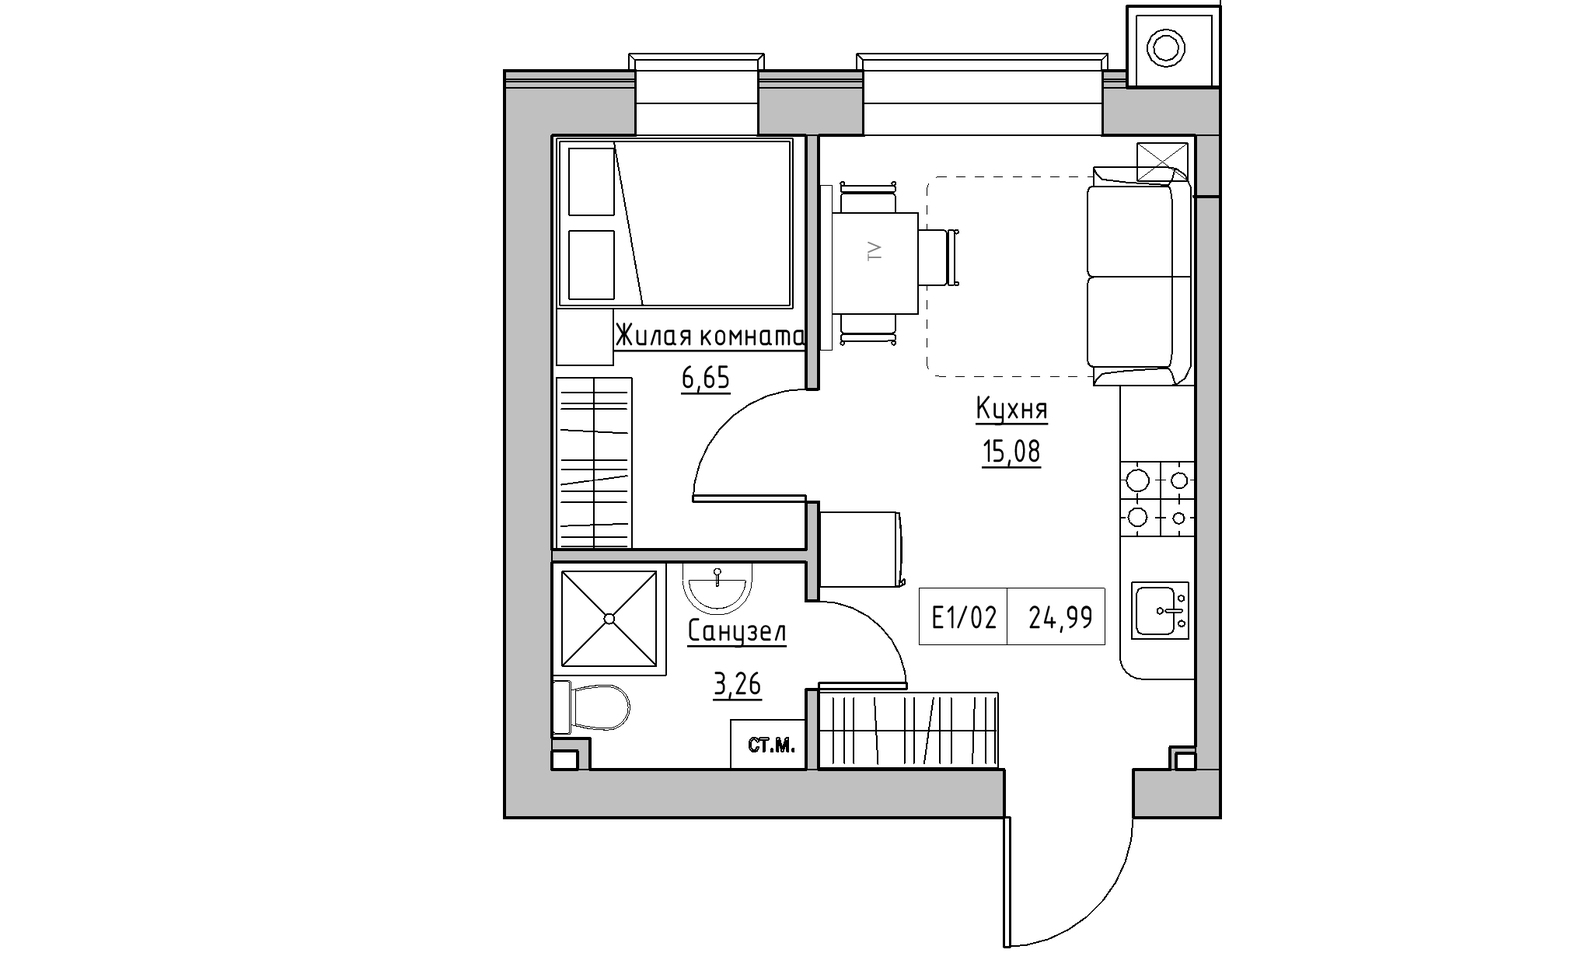 Планировка 1-к квартира площей 24.99м2, KS-014-04/0004.